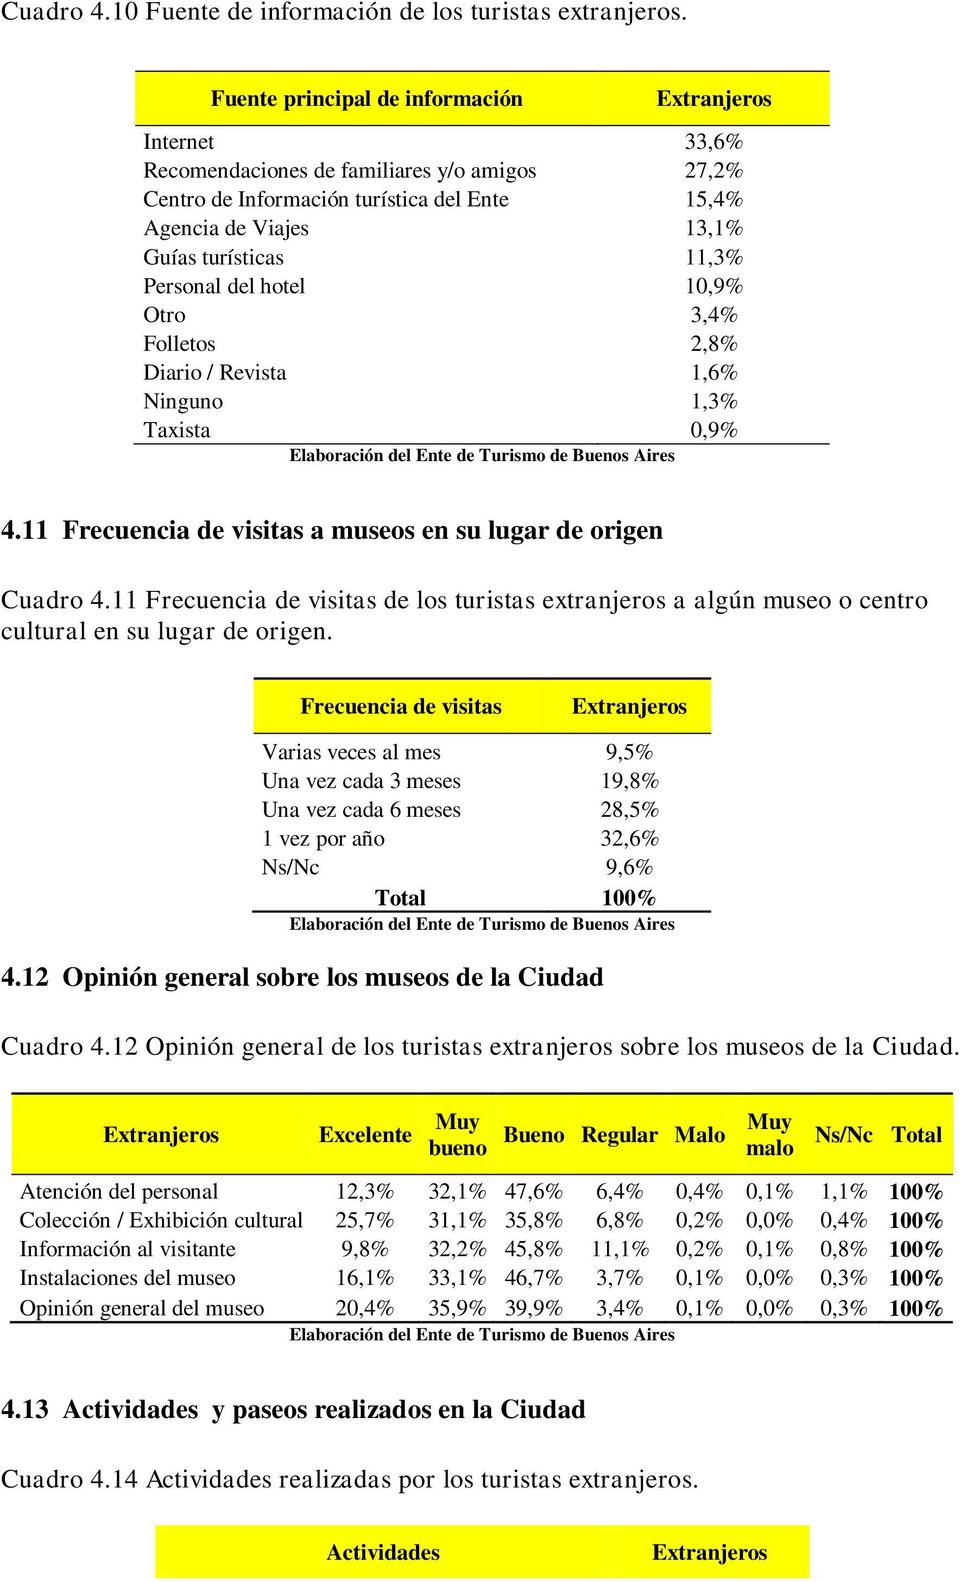 del hotel 10,9% Otro 3,4% Folletos 2,8% Diario / Revista 1,6% Ninguno 1,3% Taxista 0,9% 4.11 Frecuencia de visitas a museos en su lugar de origen Cuadro 4.